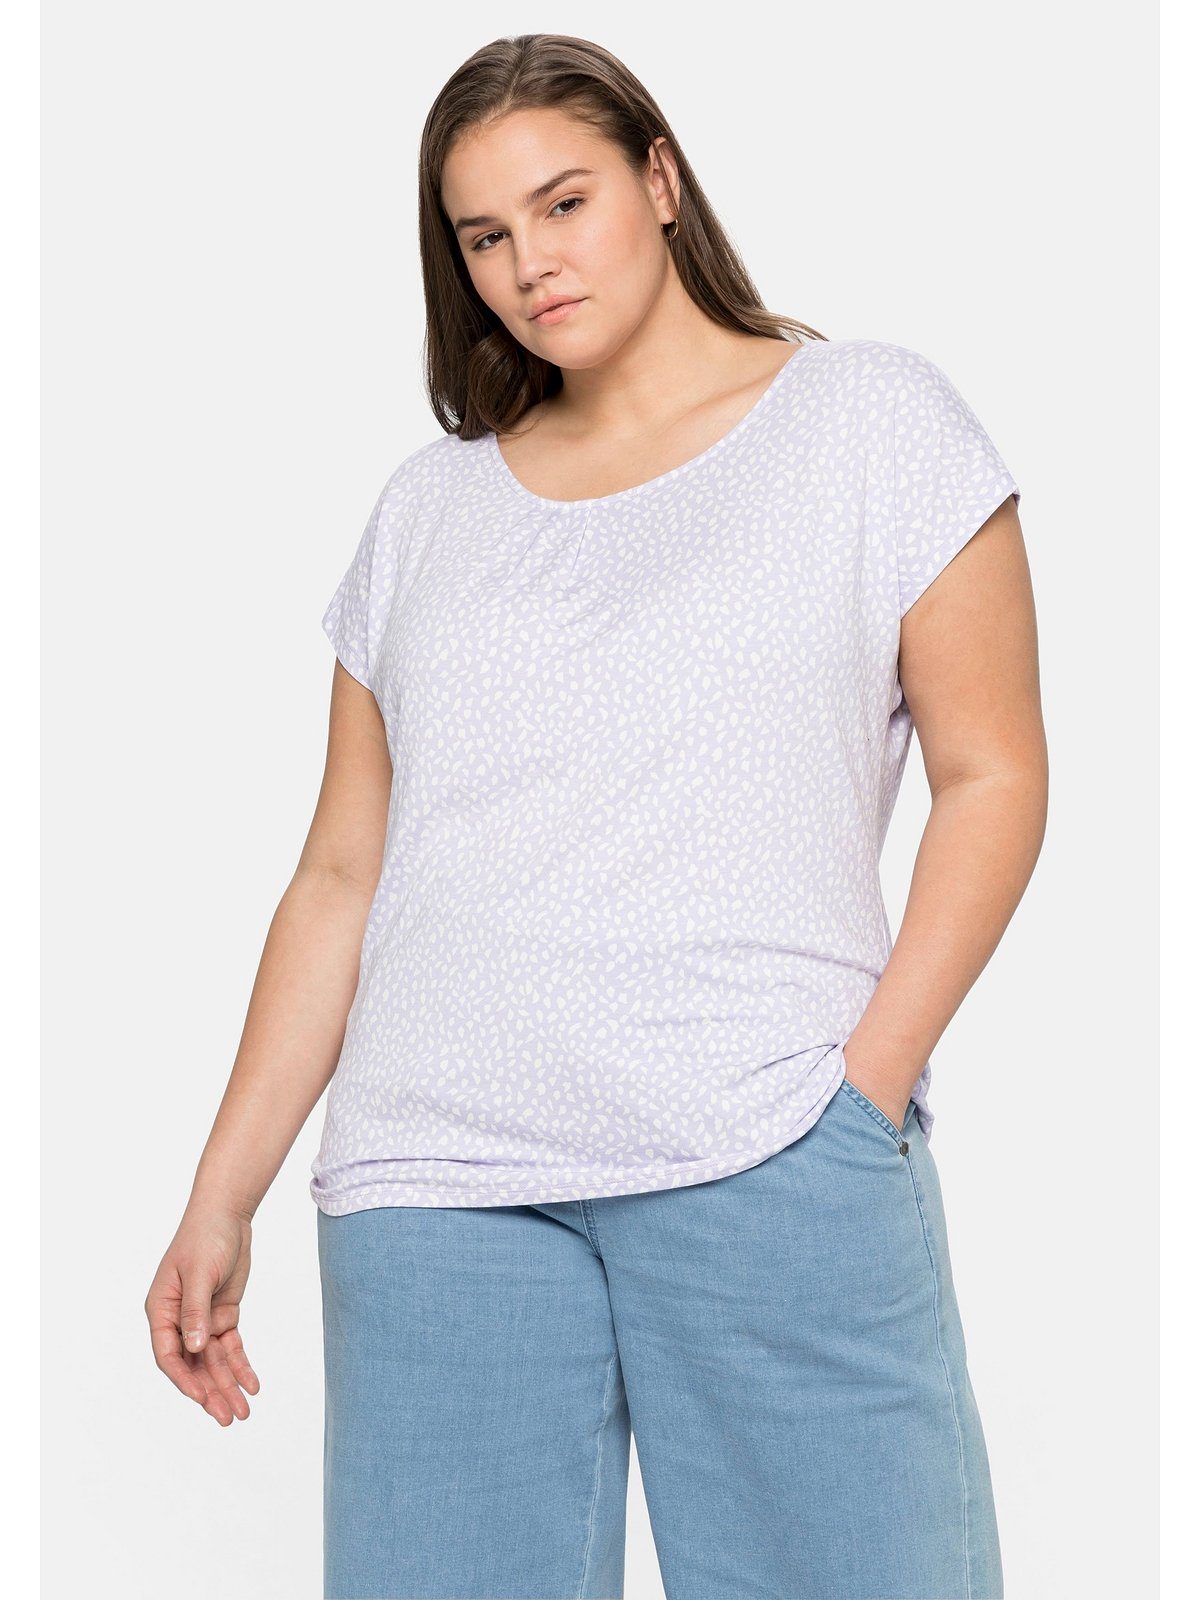 Sheego T-Shirt Große Falten Größen Alloverdruck mit und lavendel gelegten